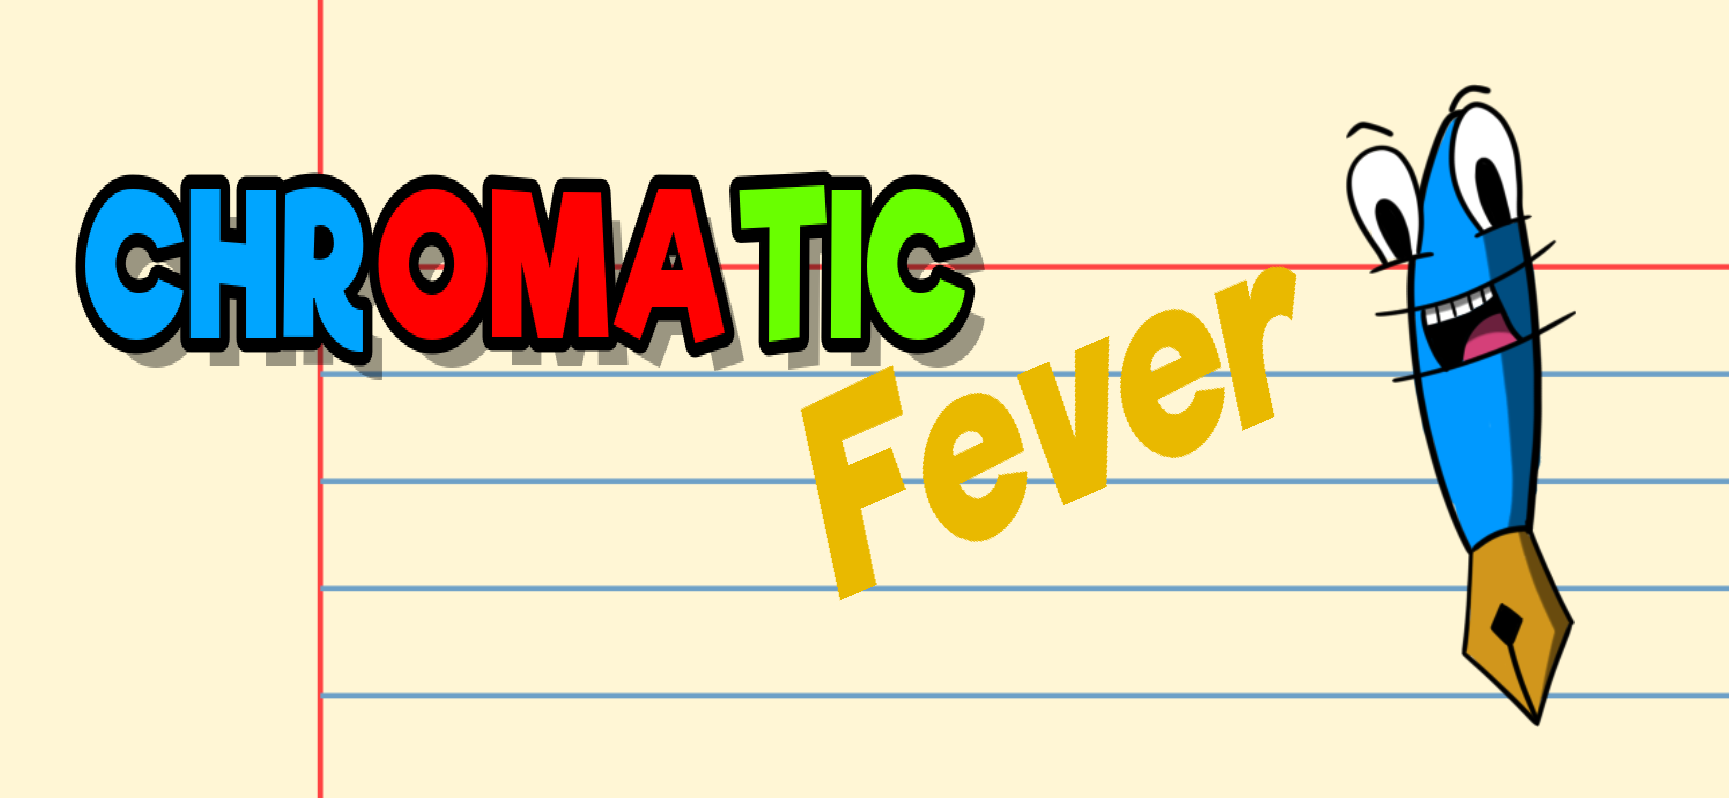 Chromatic Fever